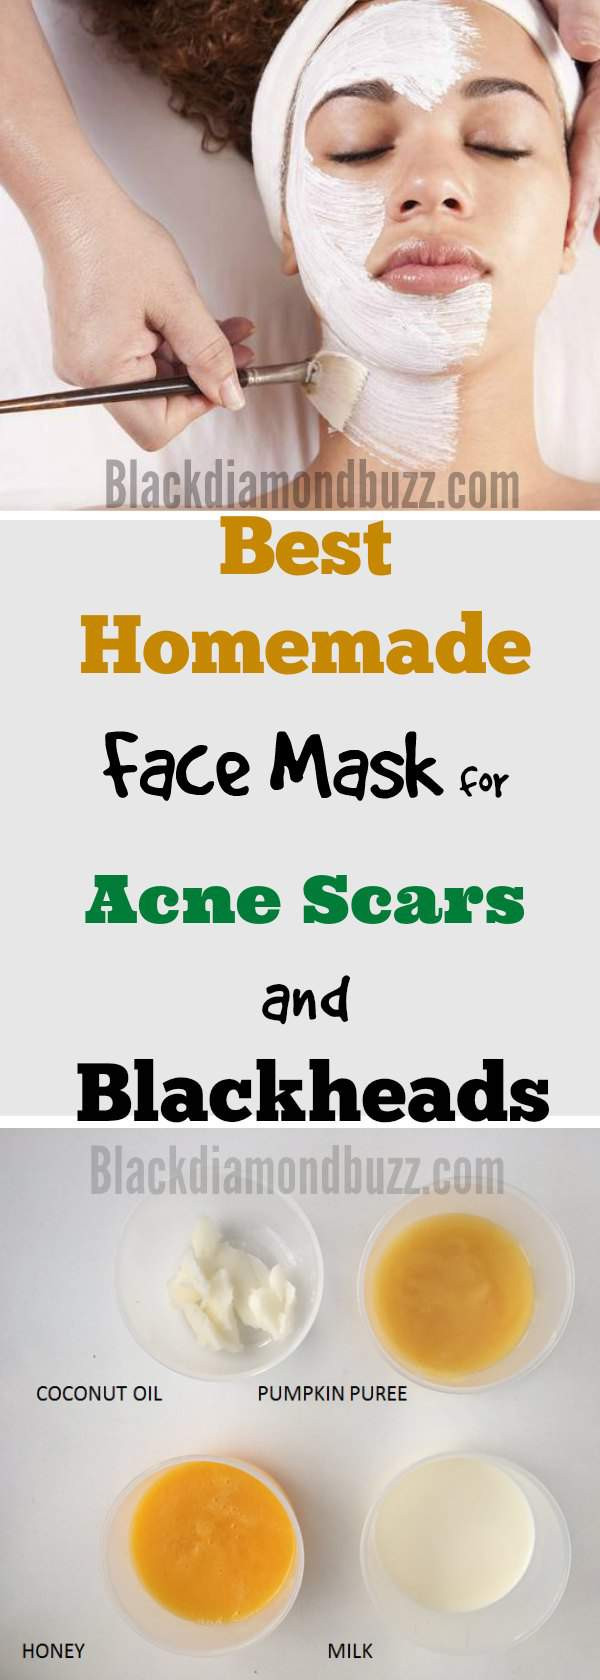 DIY Face Masks For Acne
 DIY Face Mask for Acne 7 Best Homemade Face Masks